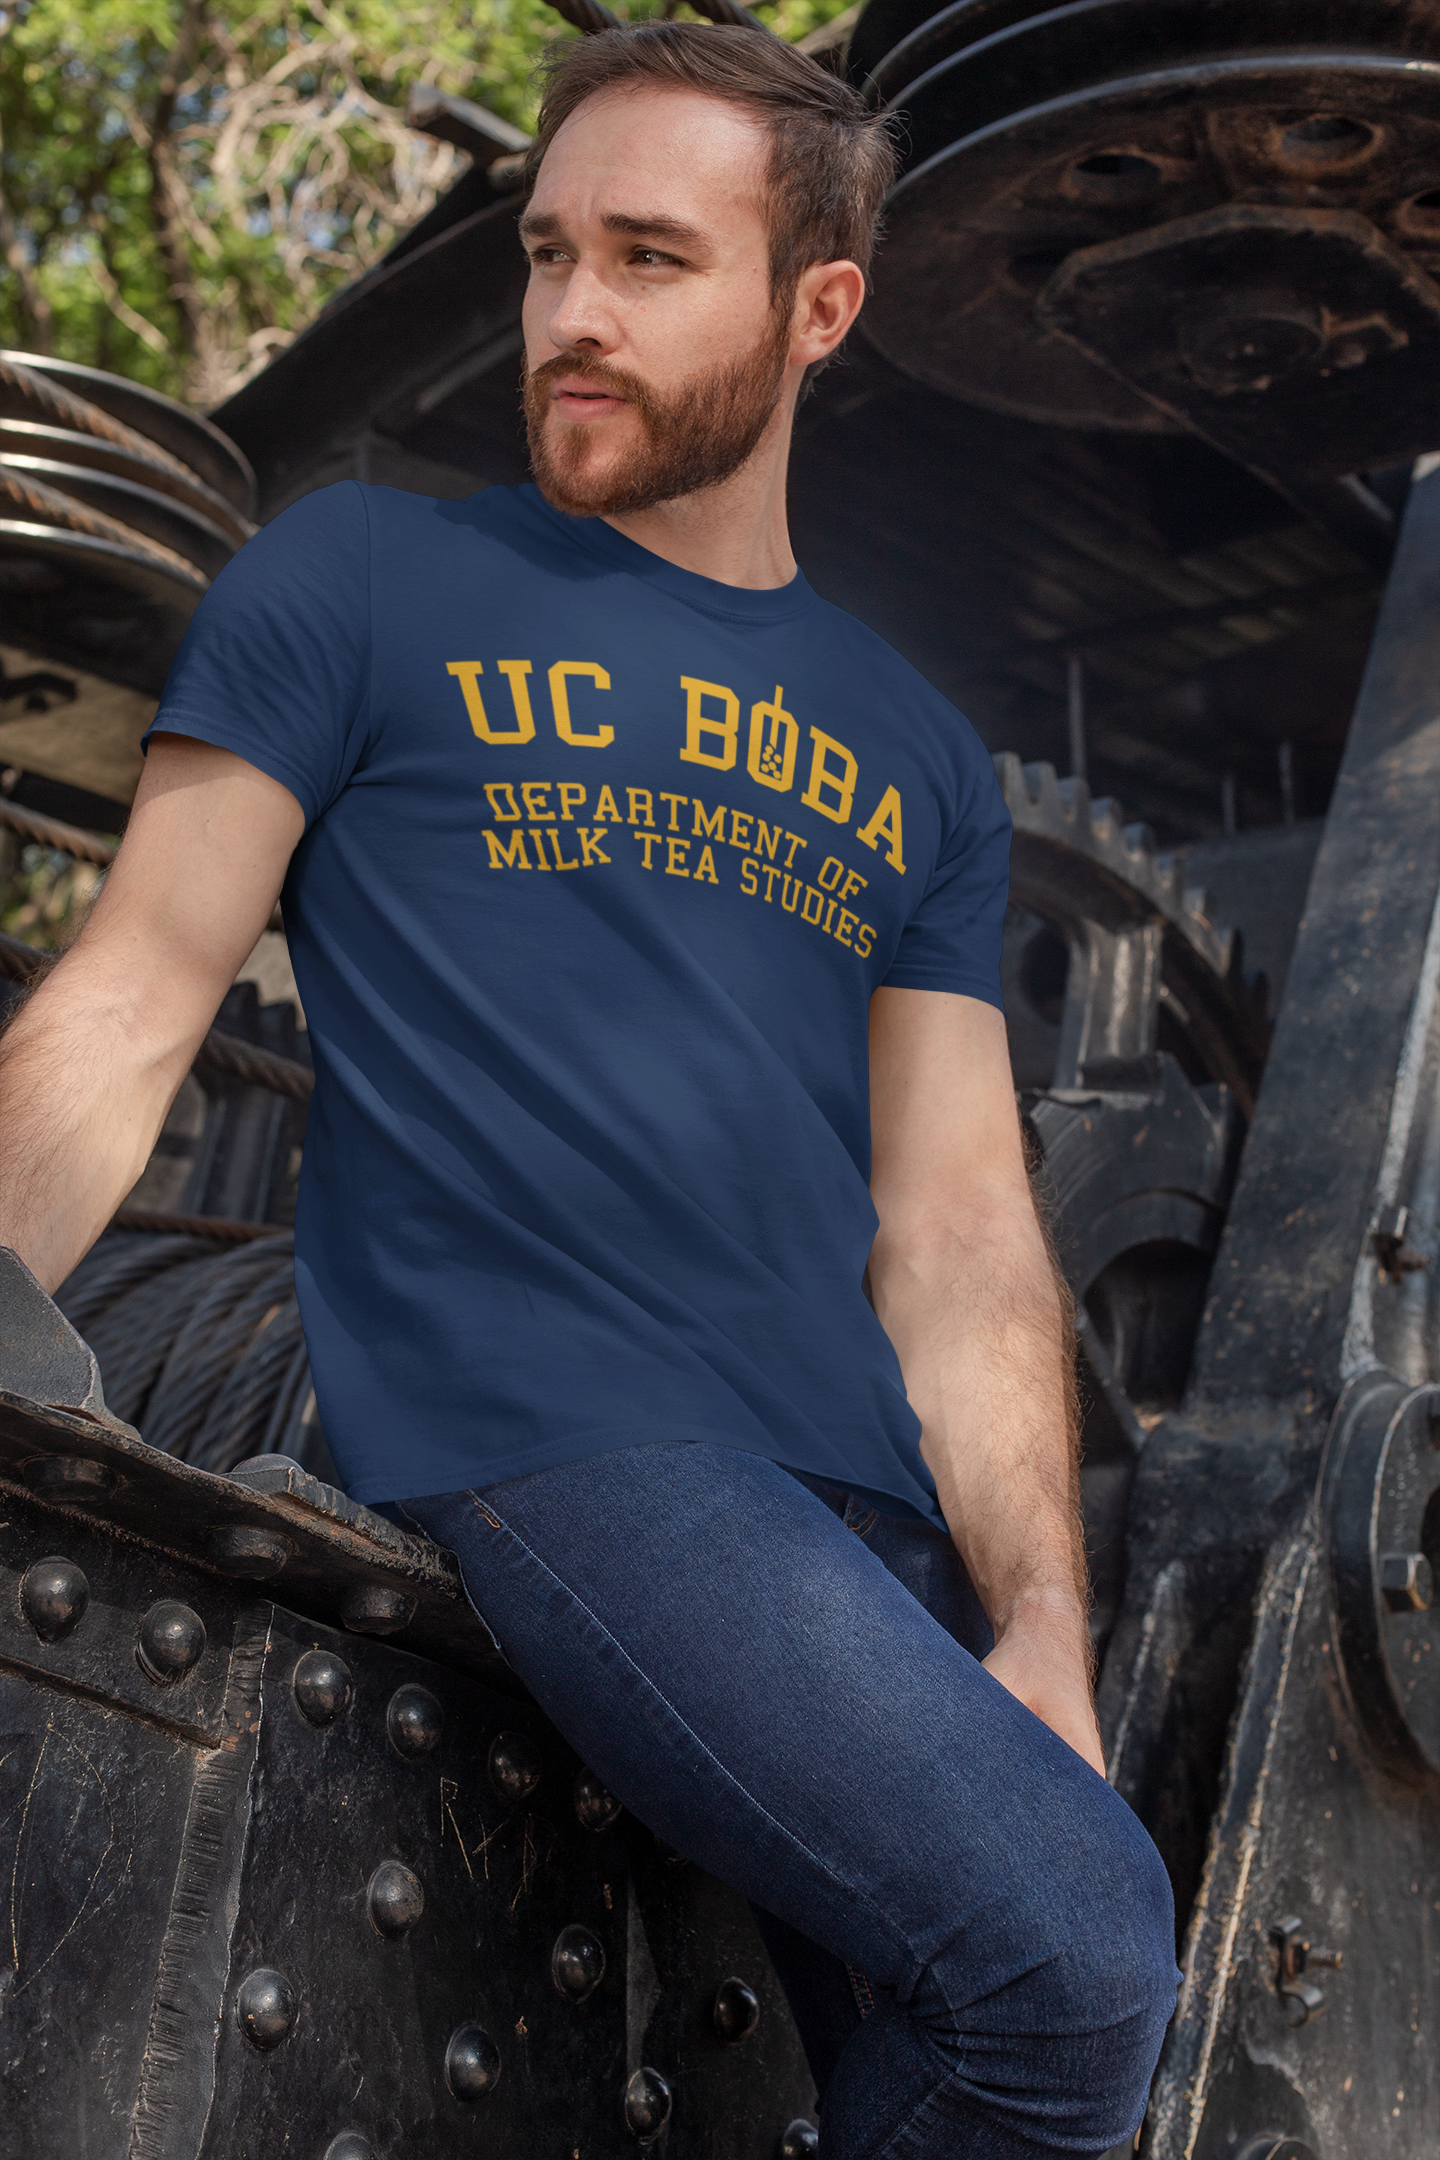 A Bearded Man Wearing a UC Boba Shirt 